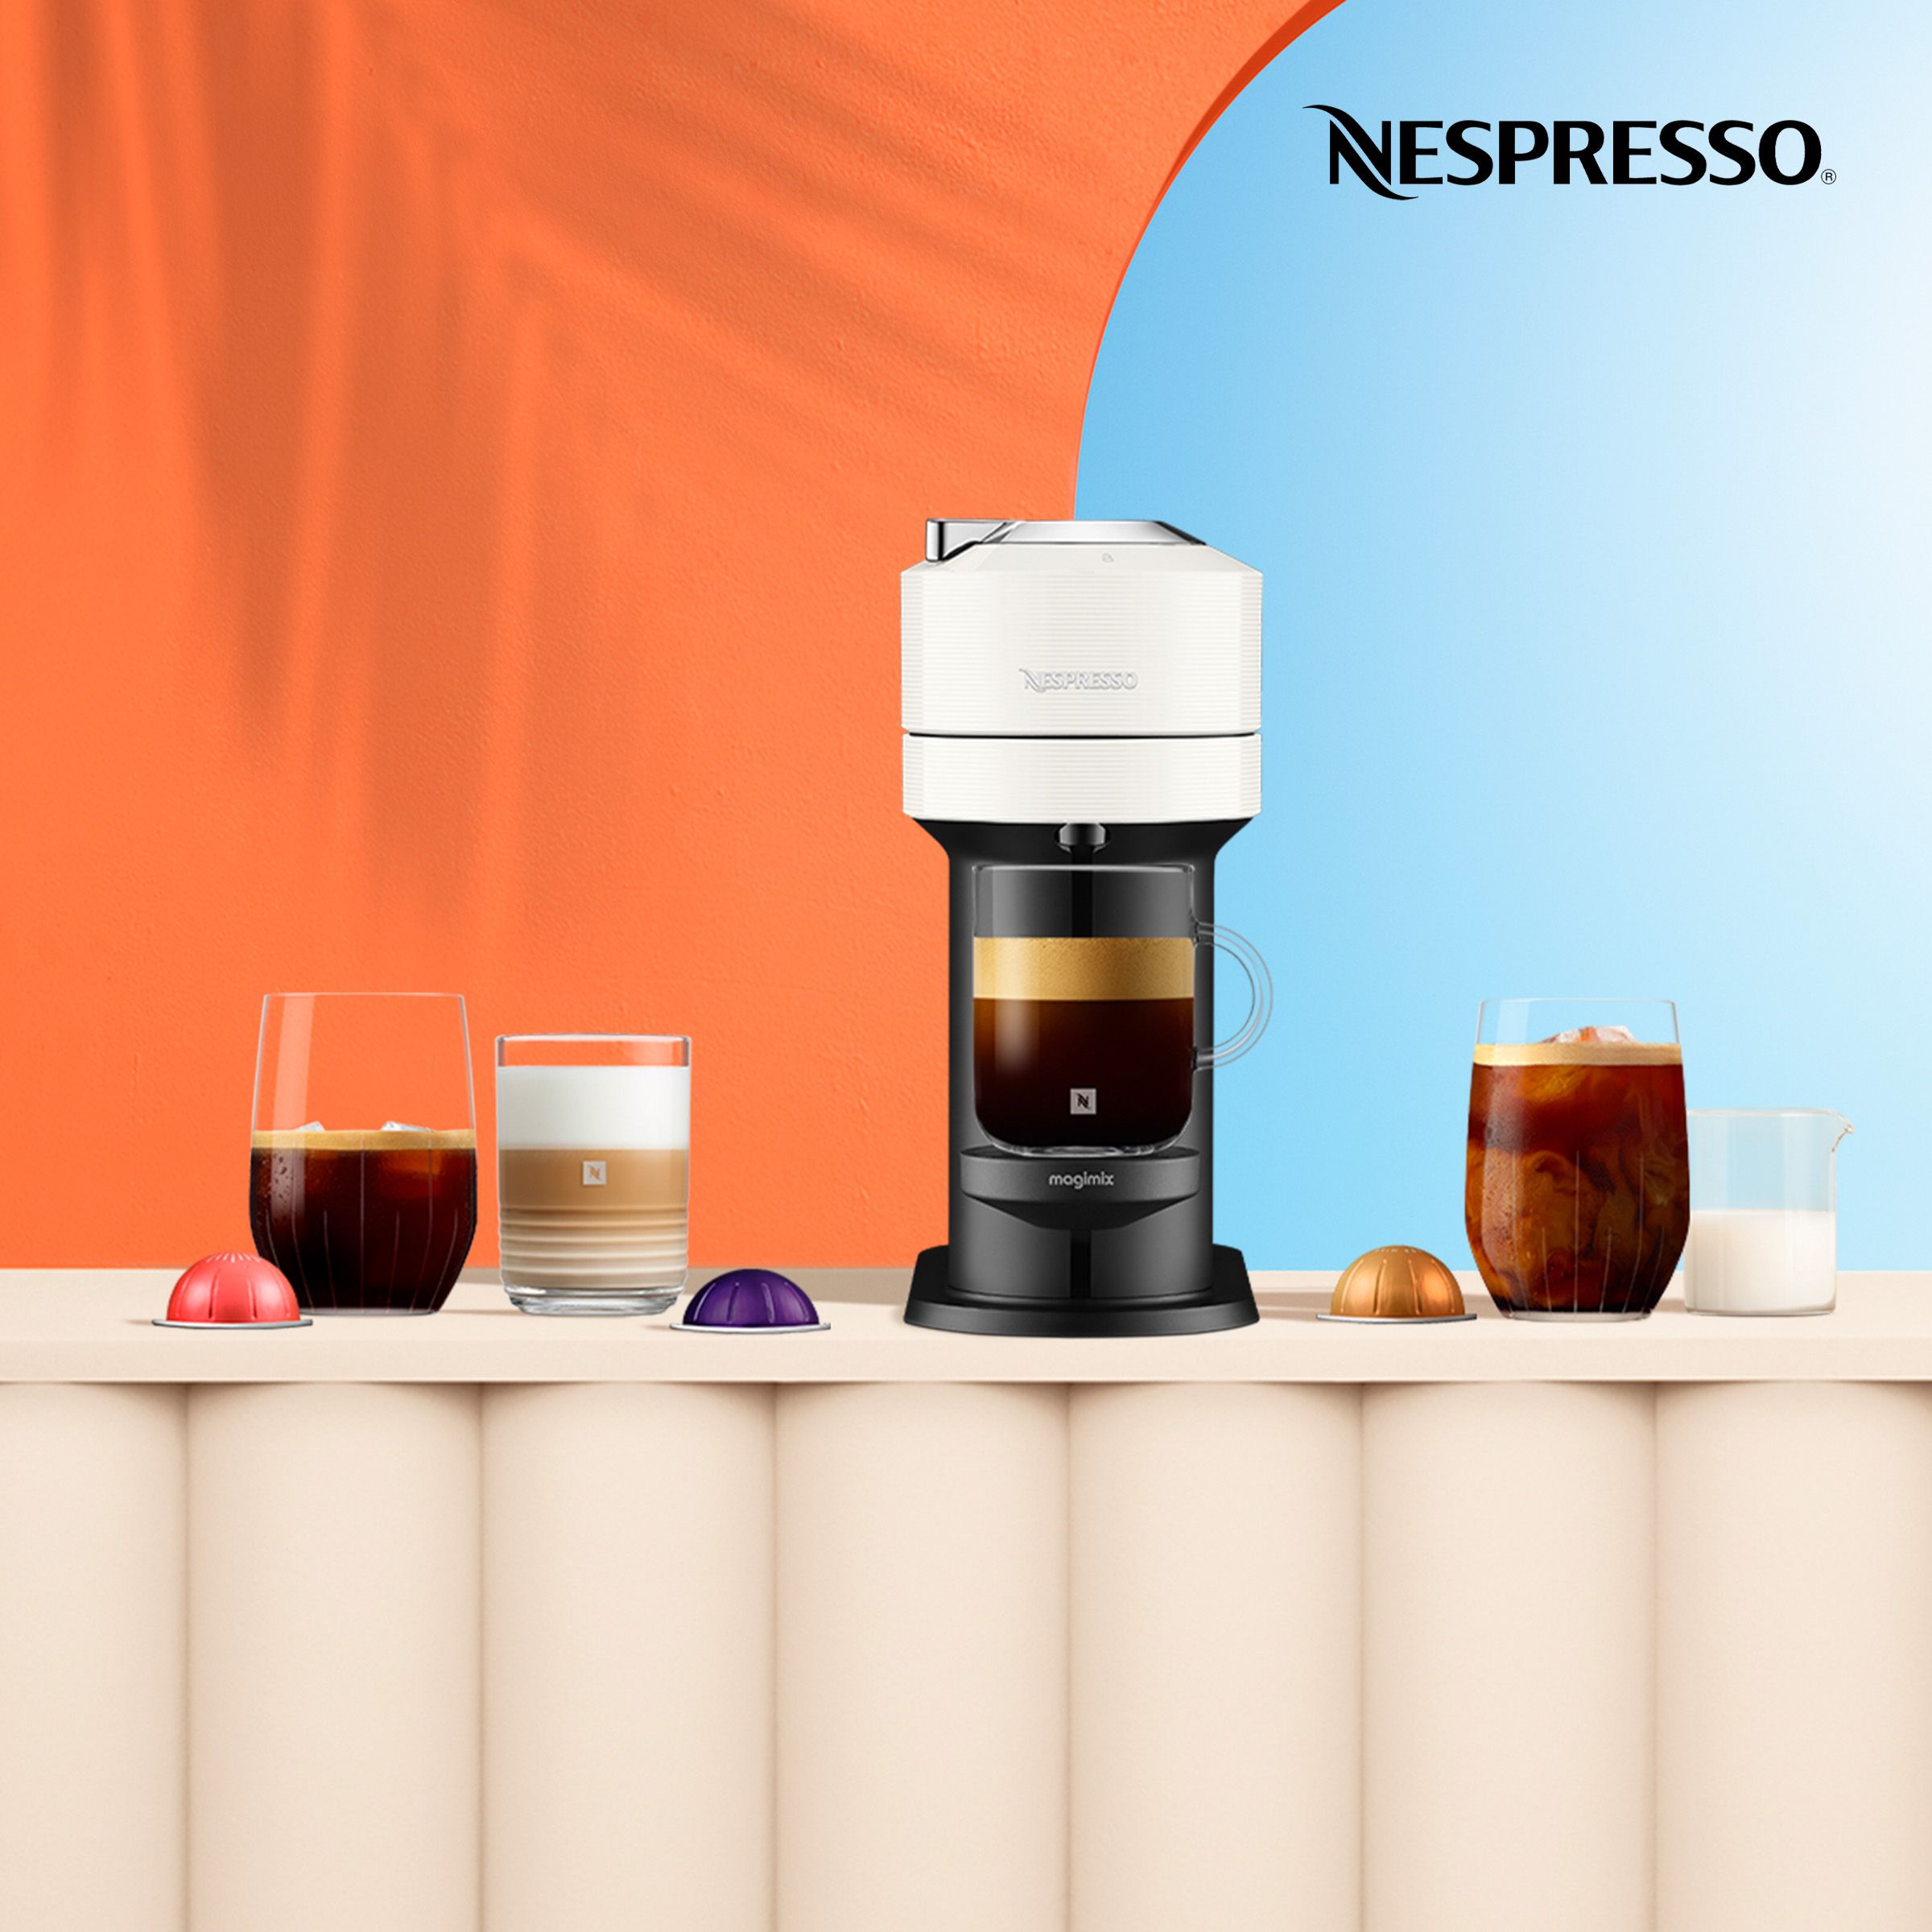 Nespresso Vertuo Coffee Machine wth coffee capsules